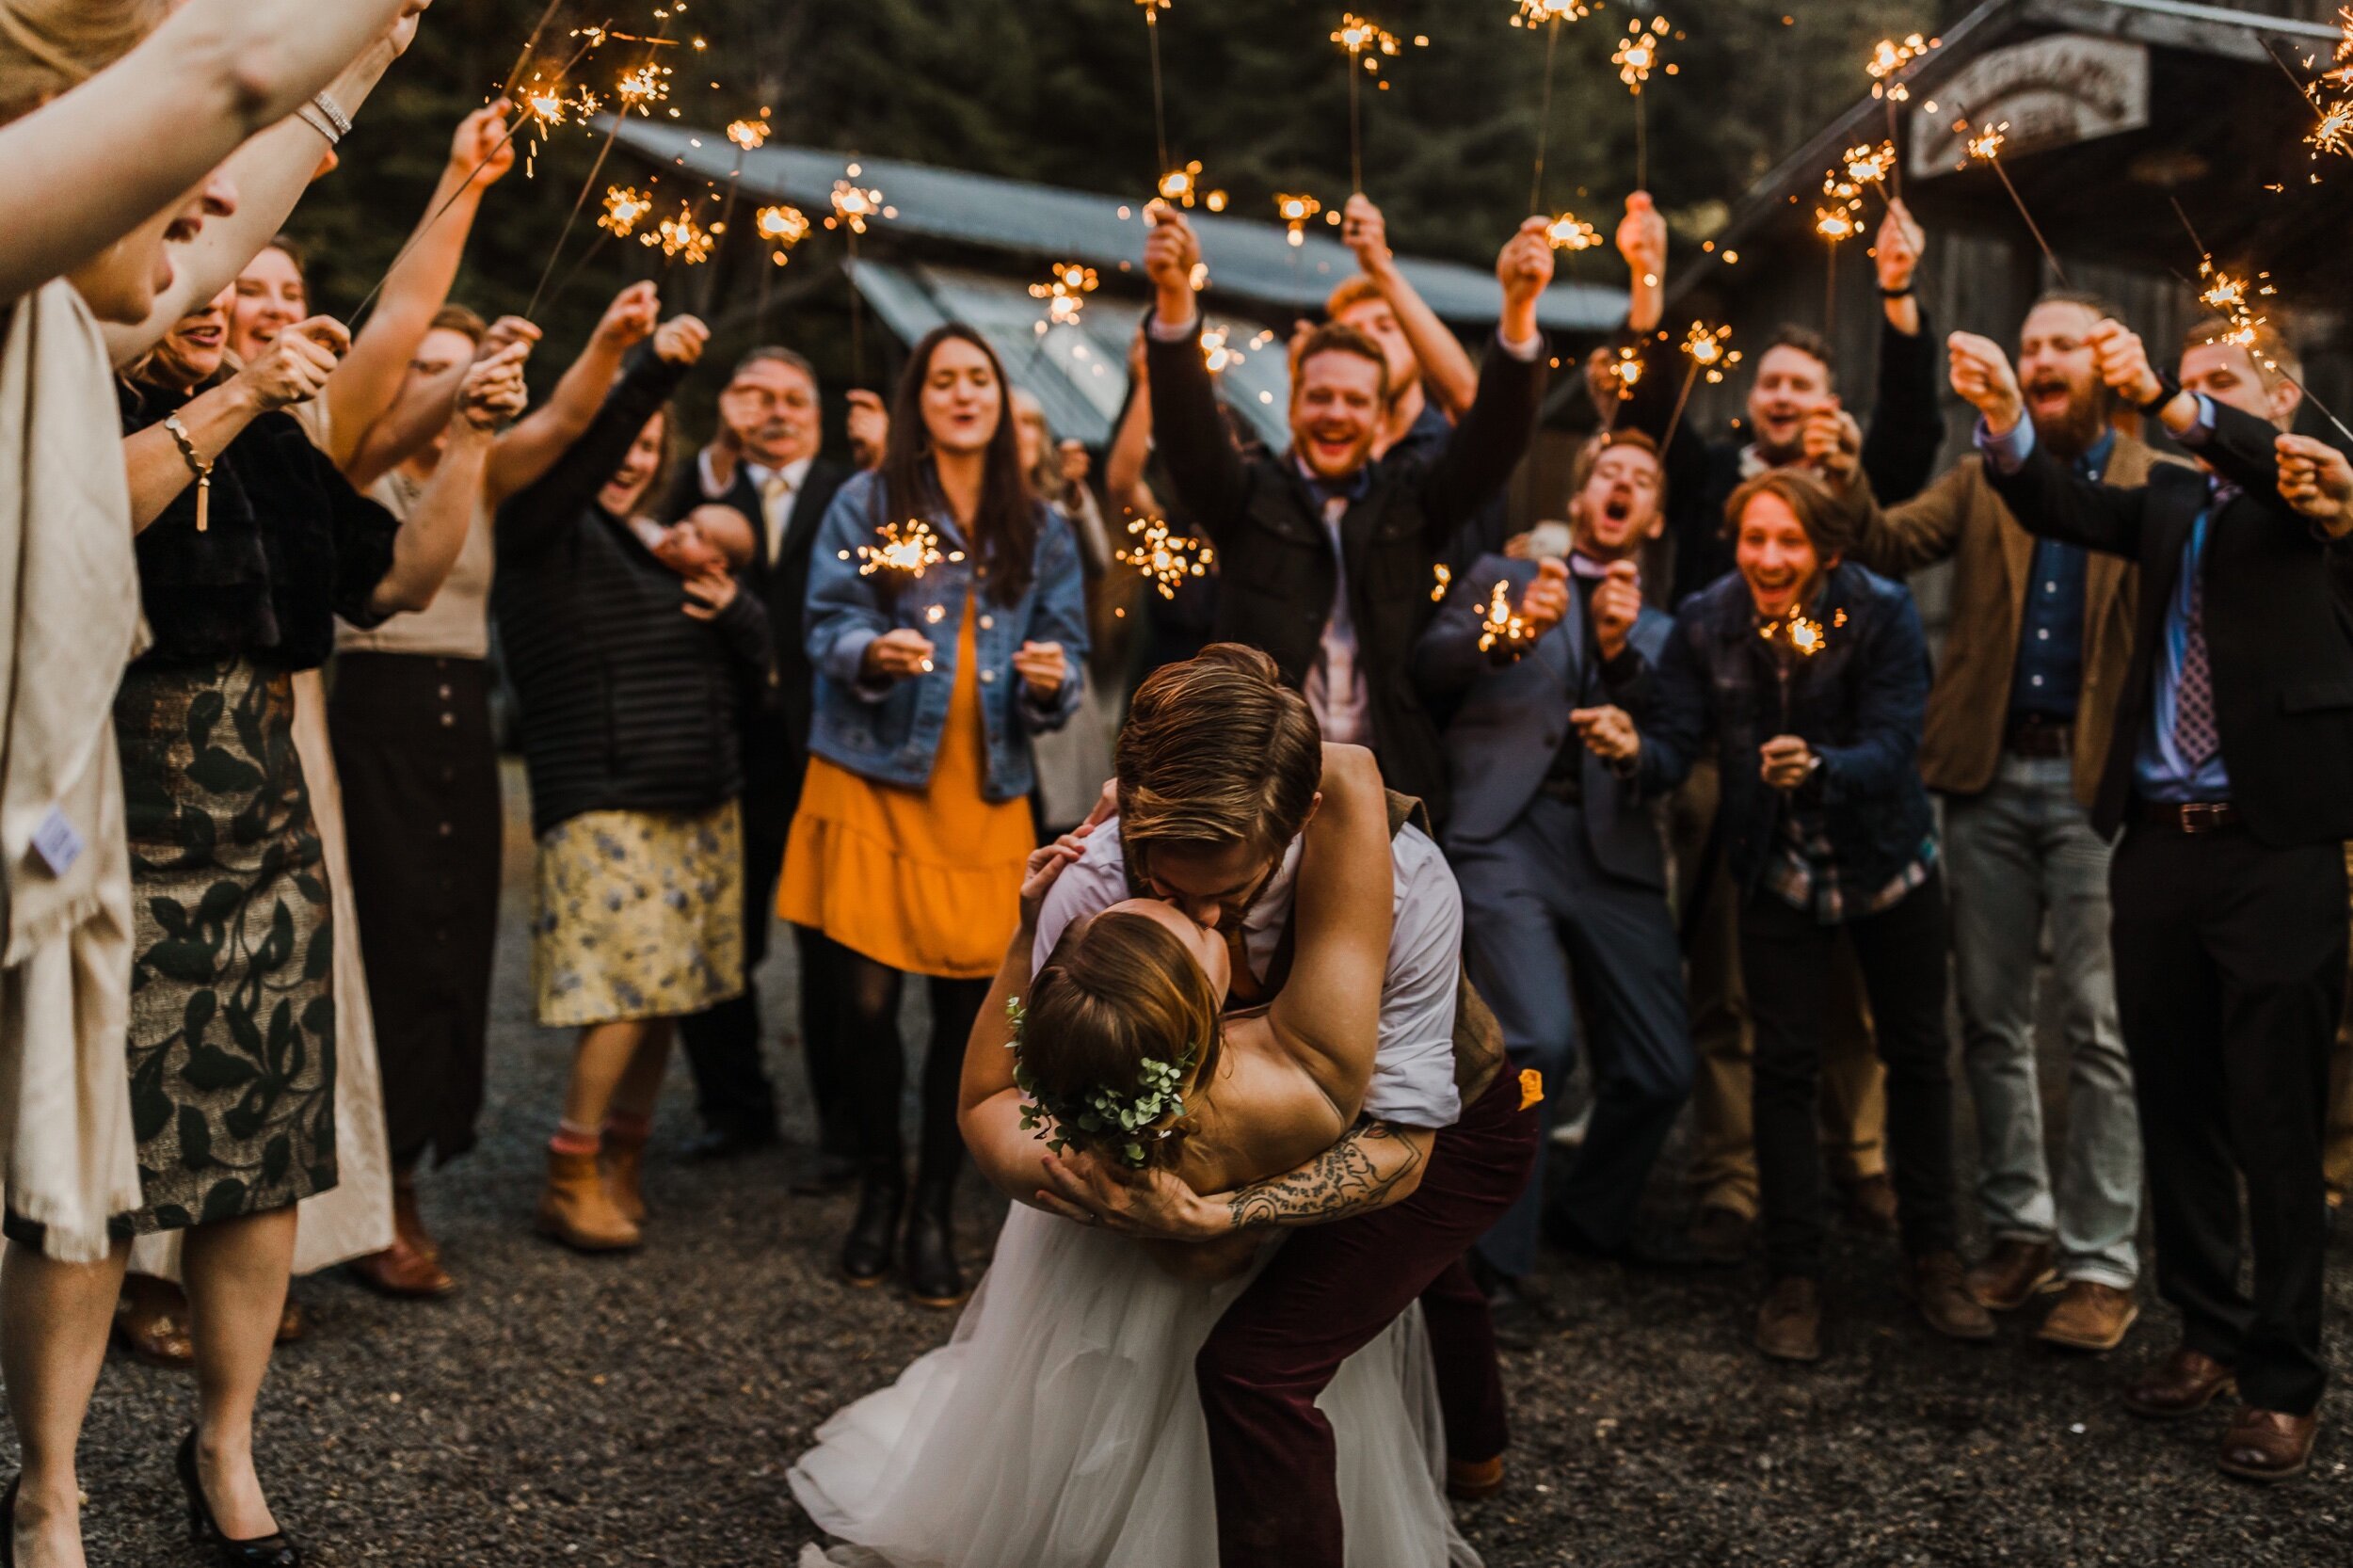 Spokane-Wedding-Photographer-Mitchams-Barn-759.jpeg